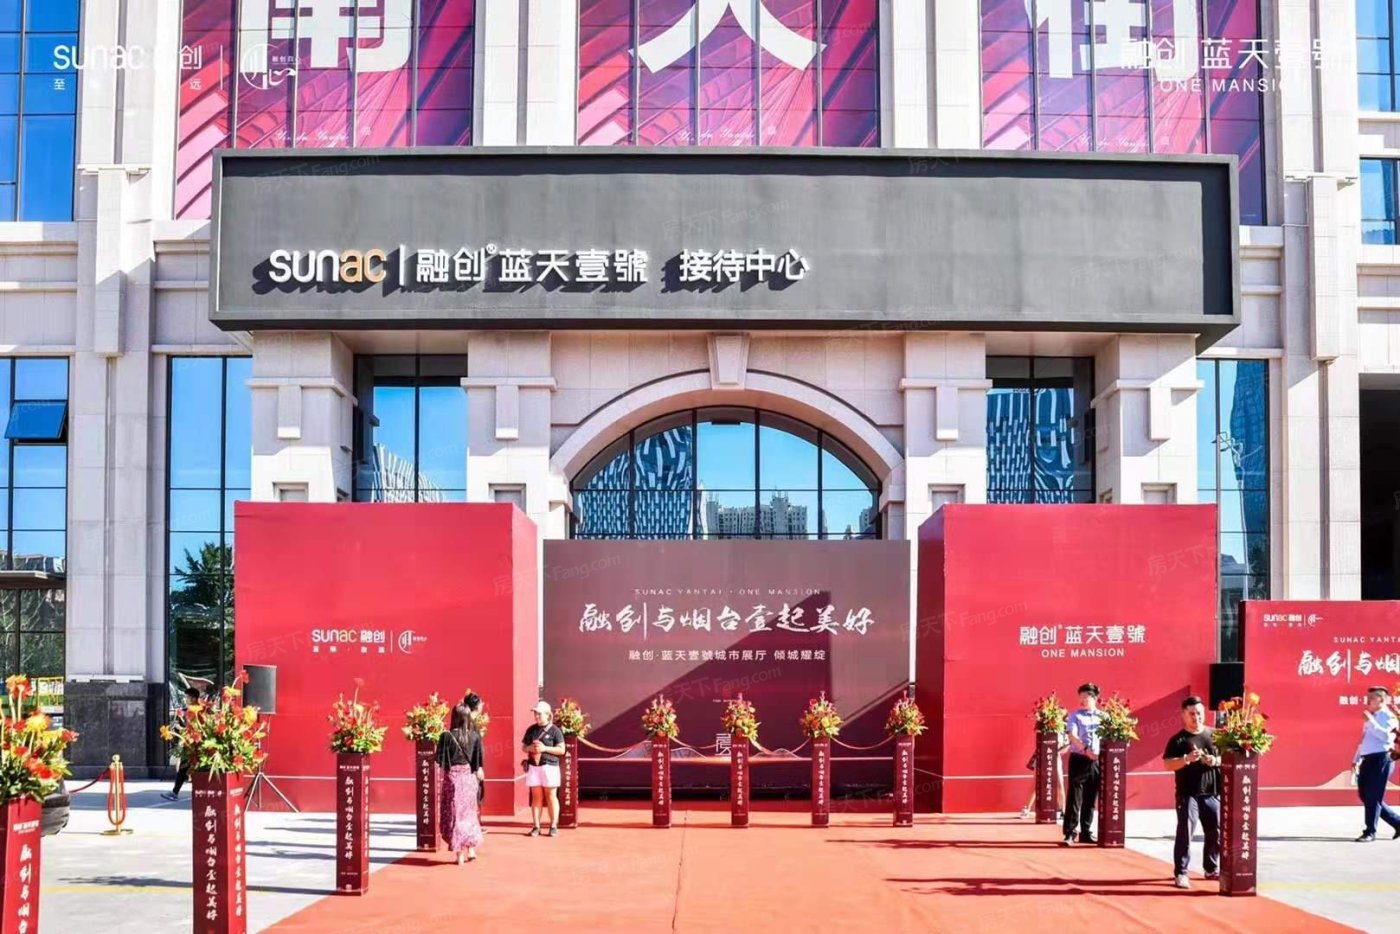 融创·蓝天壹号城市展厅已于8月31日盛大开放